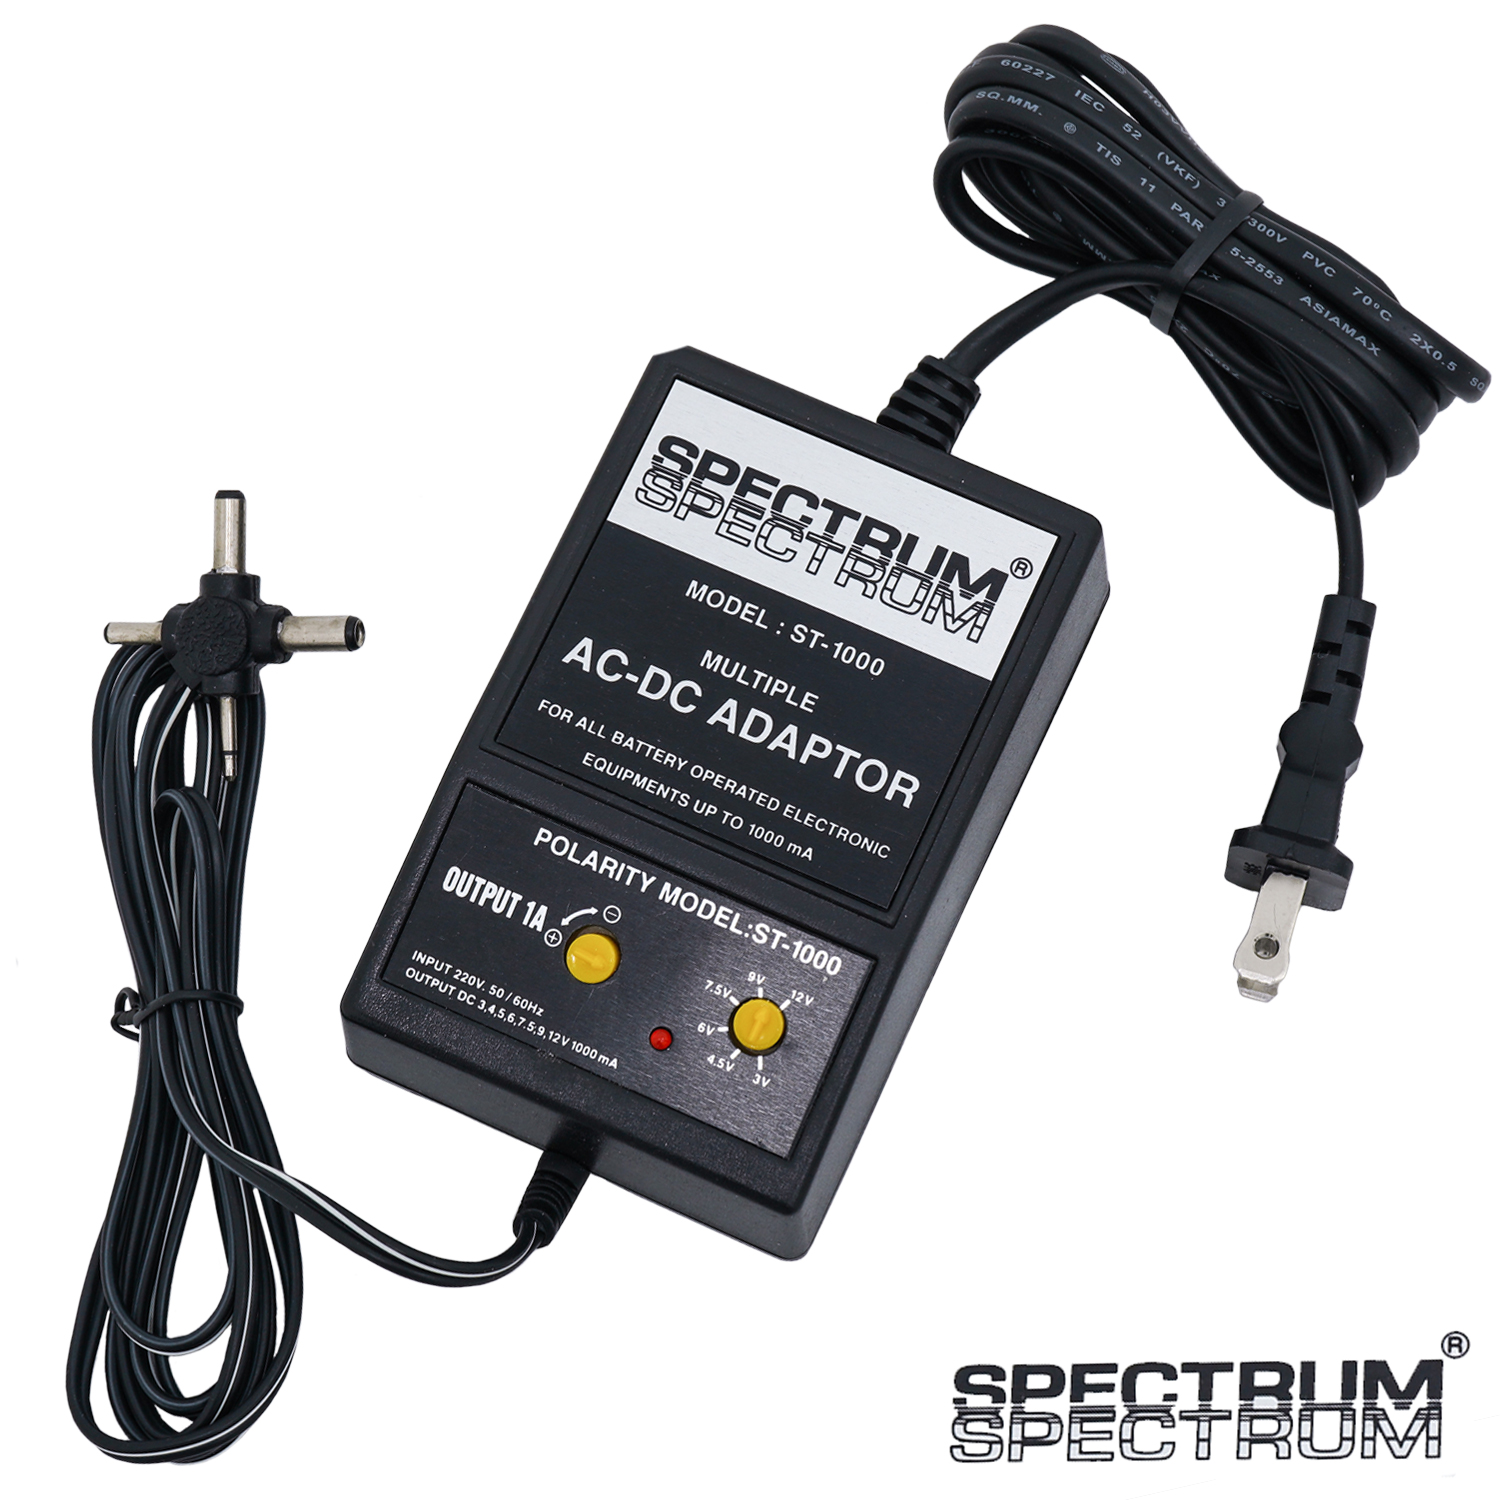 Spectrum ST-1000 AC-DC Adaptor หม้อแปลงคีย์บอร์ดไฟฟ้า จ่ายไฟ 1000 mA หัวแจ็ค 4 ทิศทาง ปรับขั้ว +/- ได้ โวลท์ปรับได้ตั้งแต่ 3, 4.5, 6, 7.5, 9, 12V